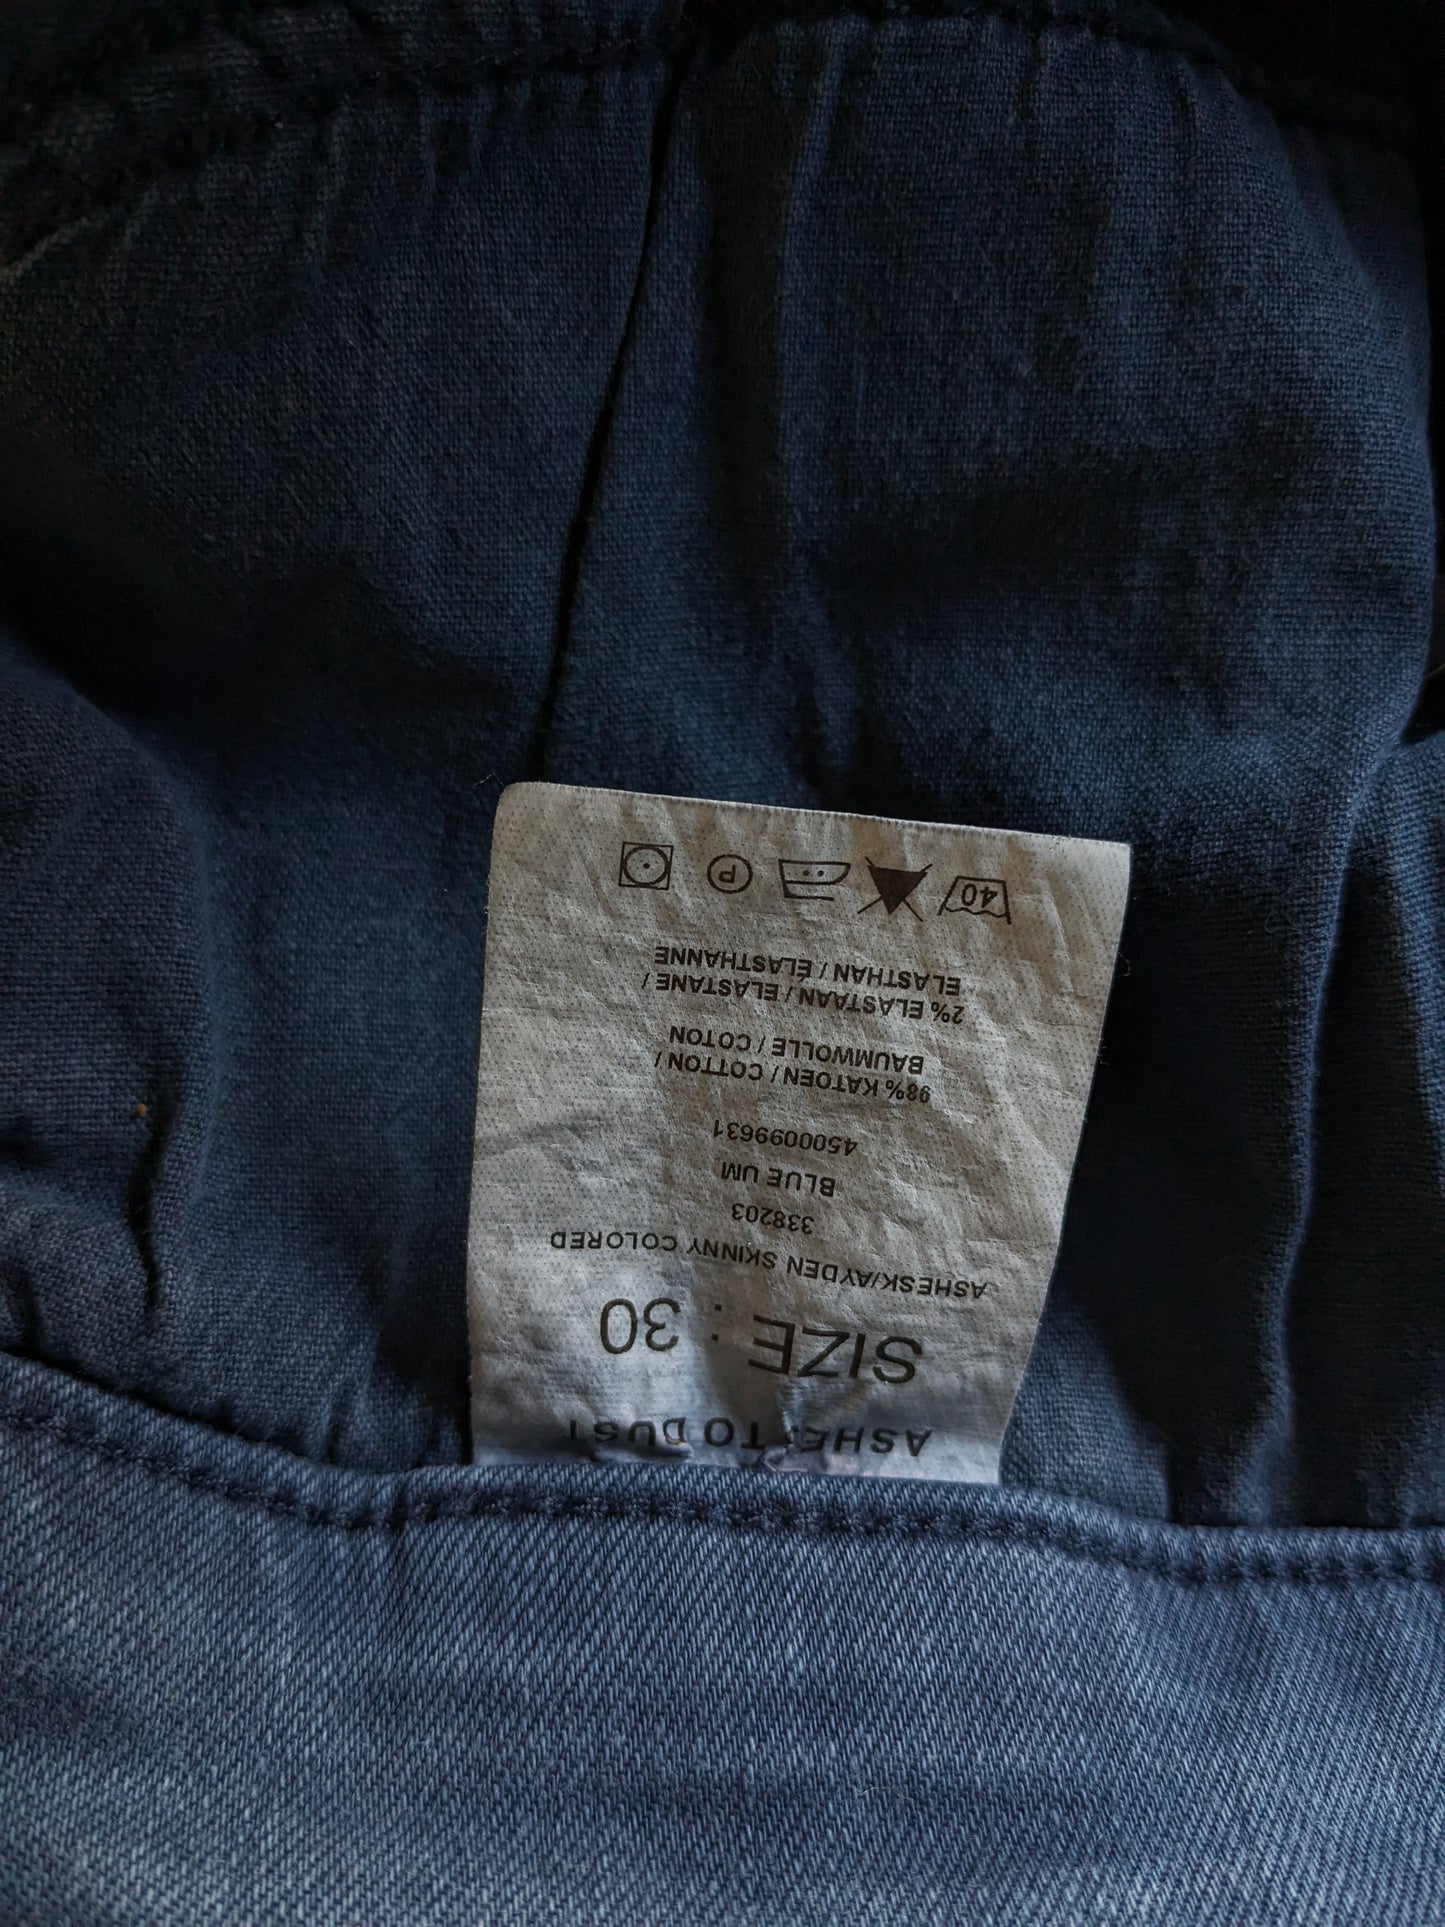 Cendres à poussière en jean. Bleu. Taille W30 - Stretch L26.